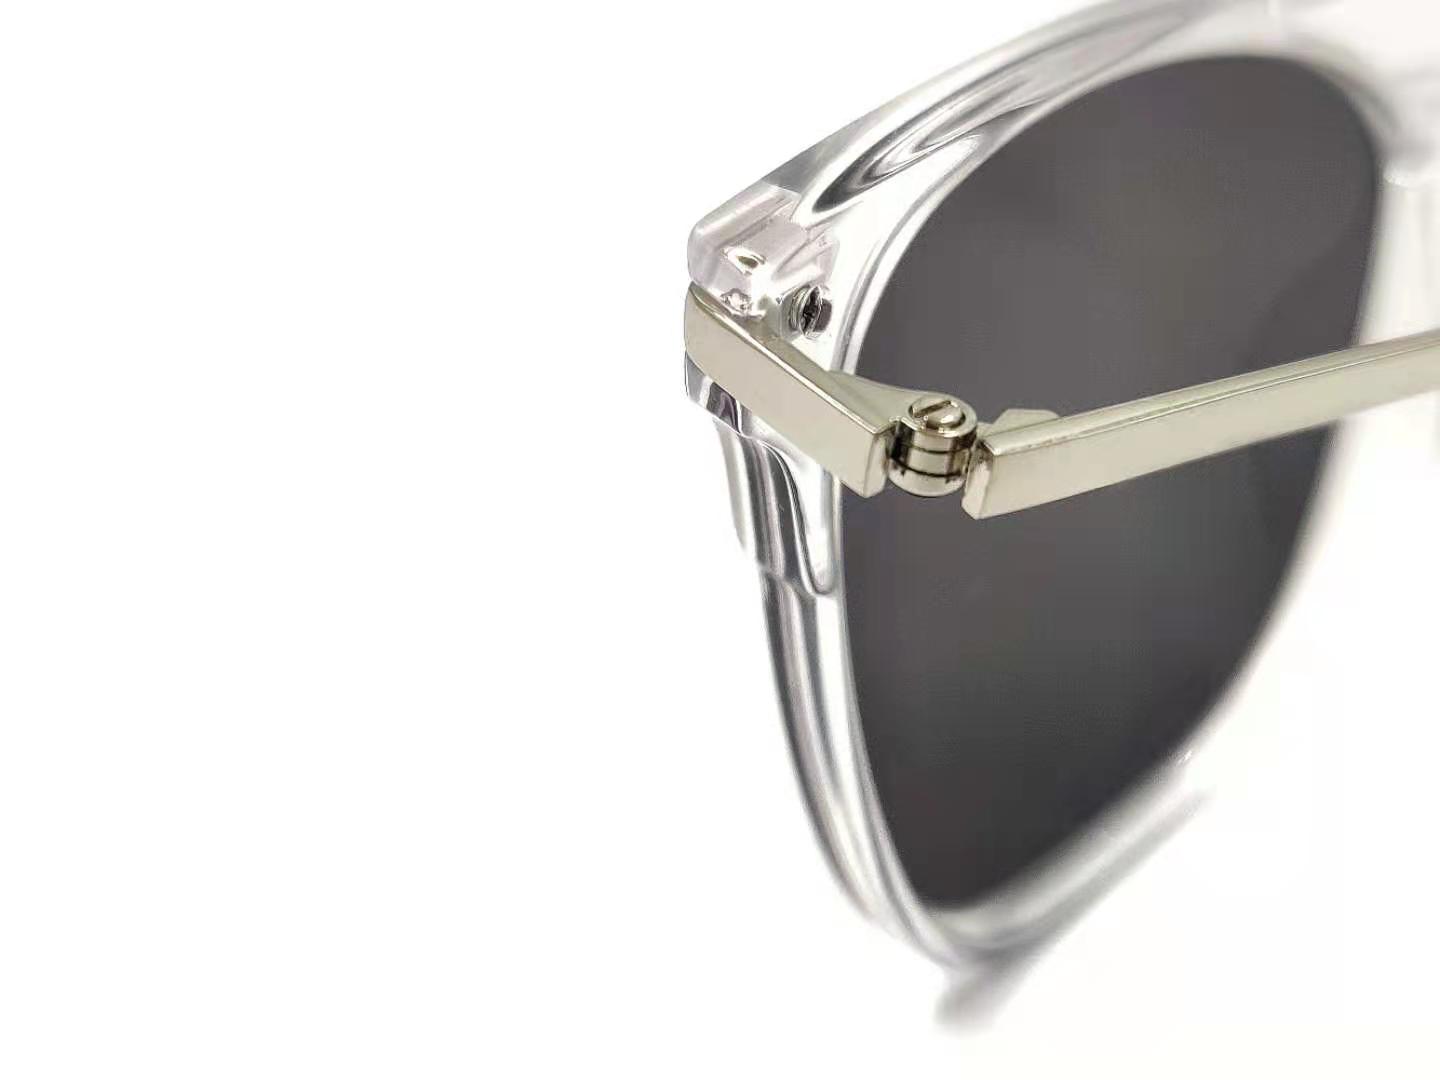 Gafas de sol con montura cuadrada transparente Gafas de sol polarizadas personalizadas Los mejores fabricantes de gafas